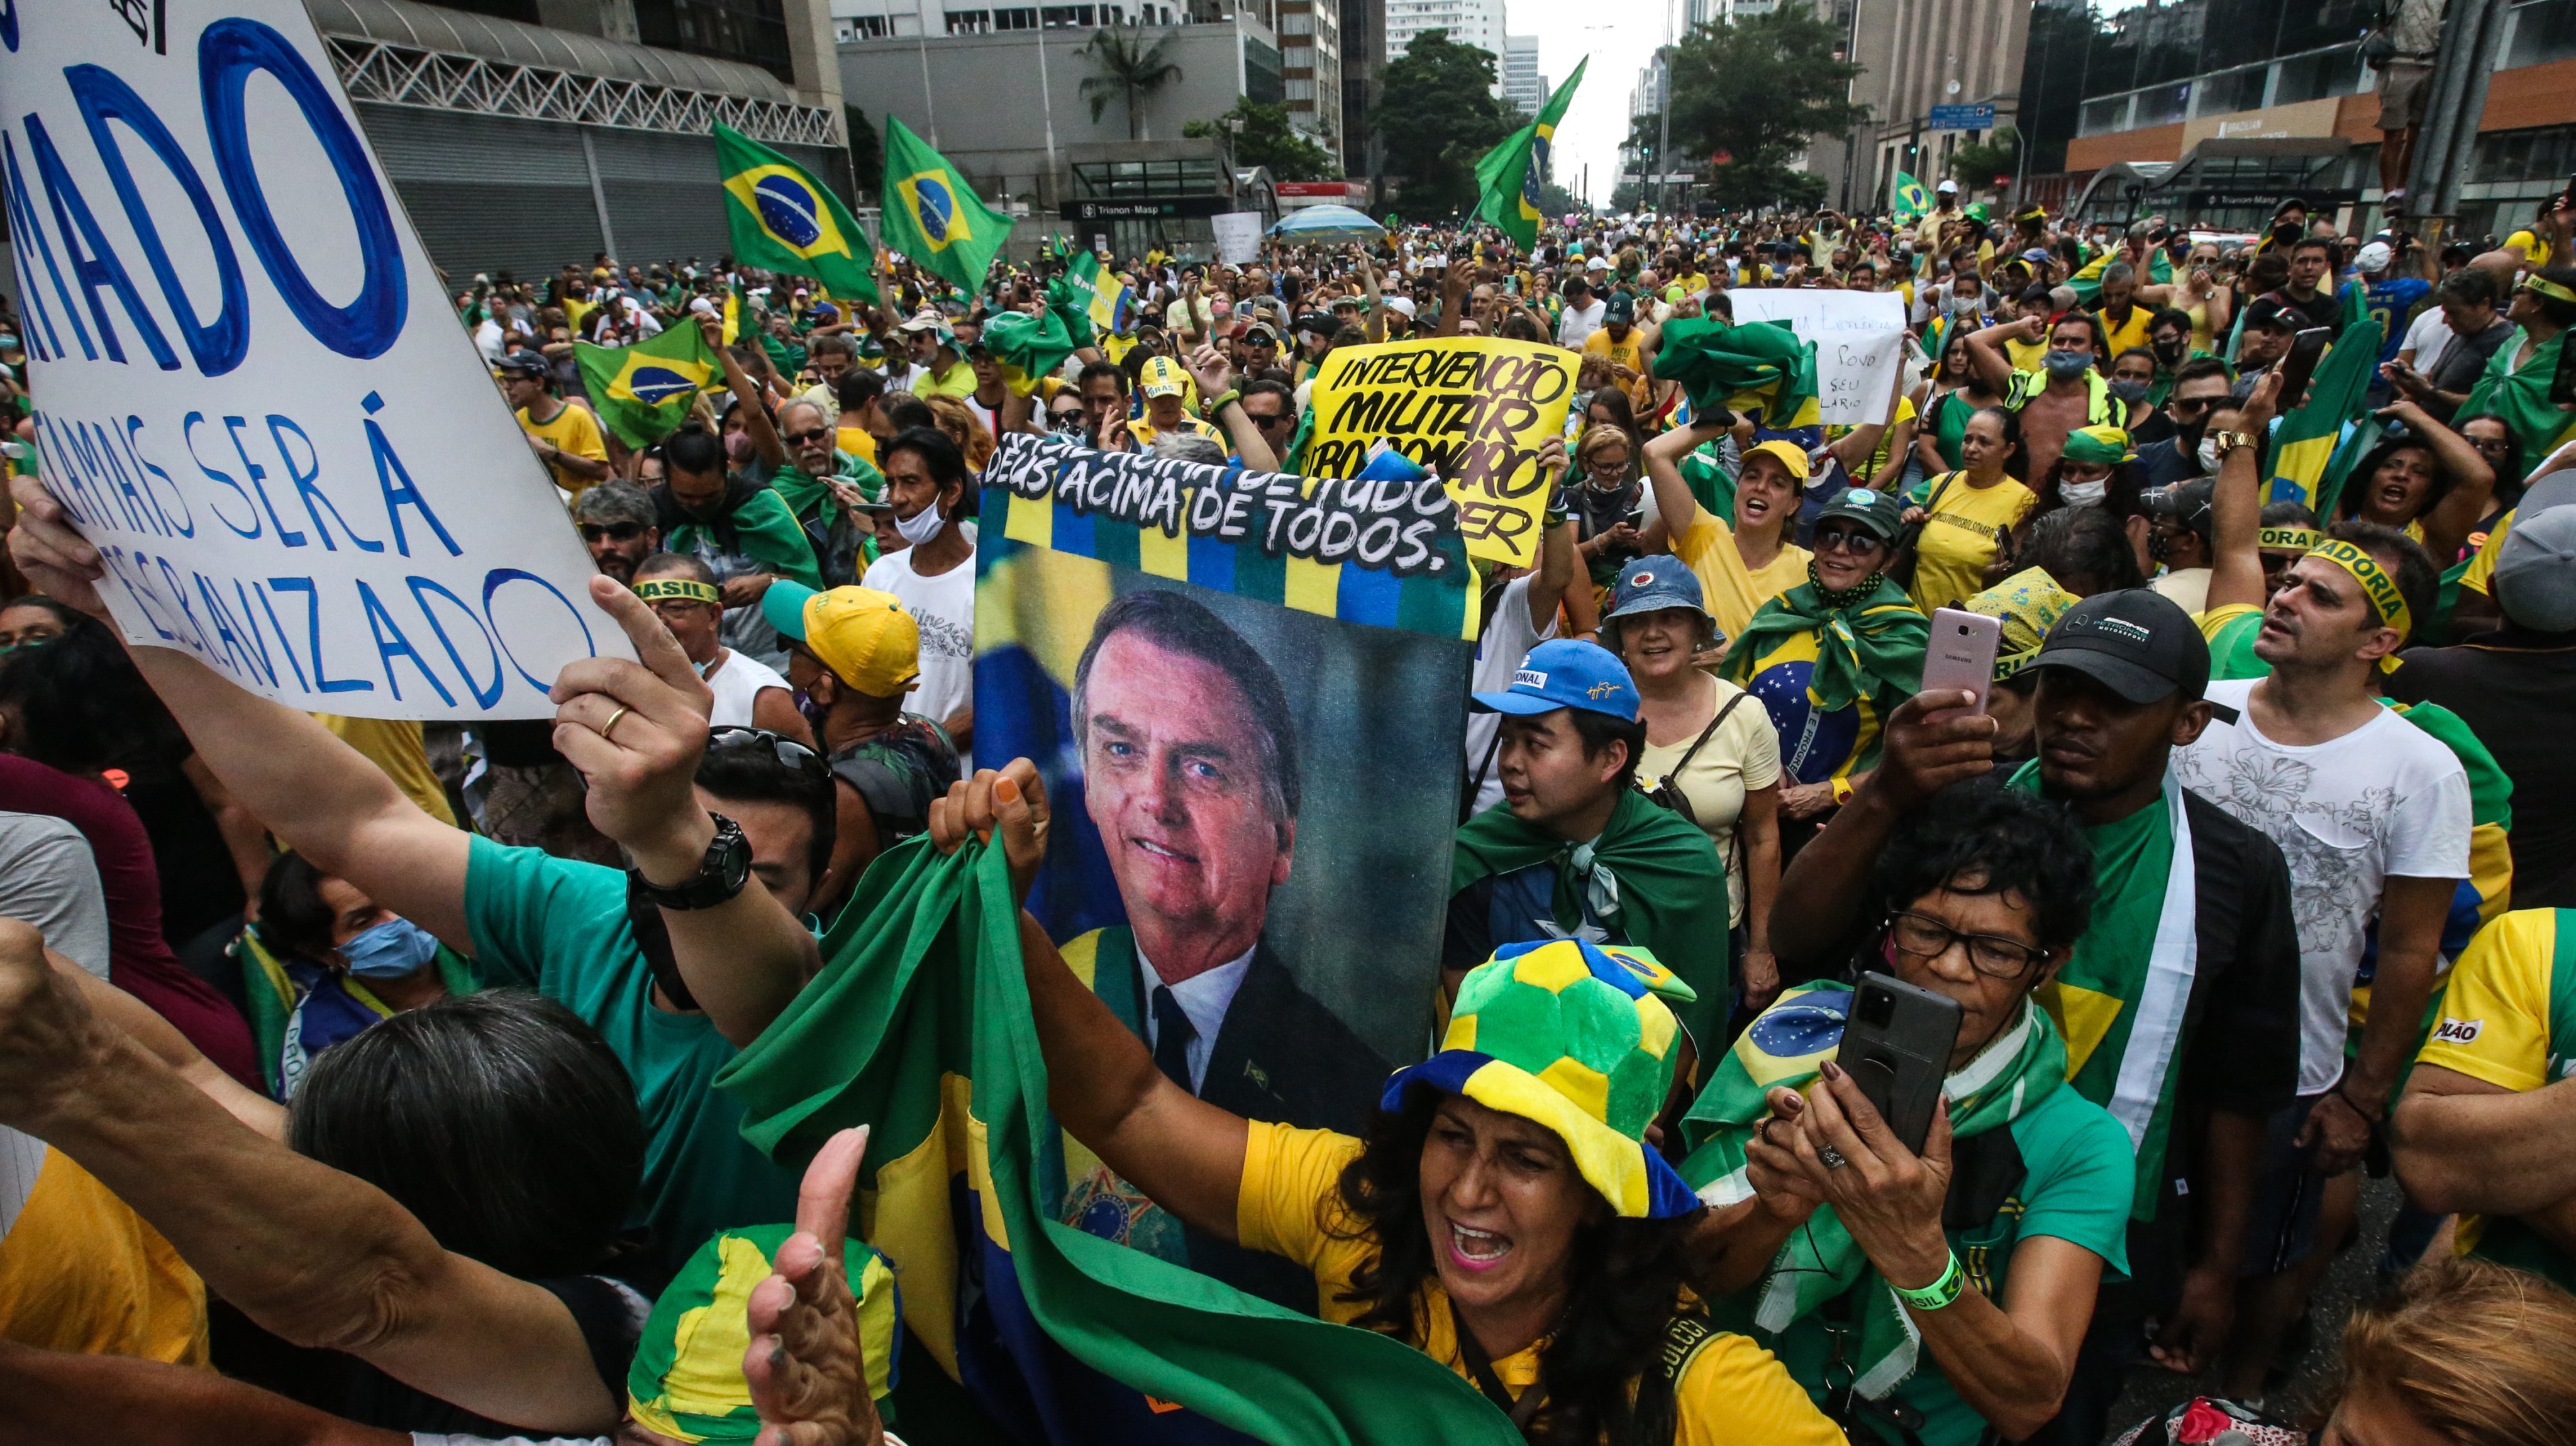 Caravan of Supporters of President Jair Bolsonaro in Sao Paulo